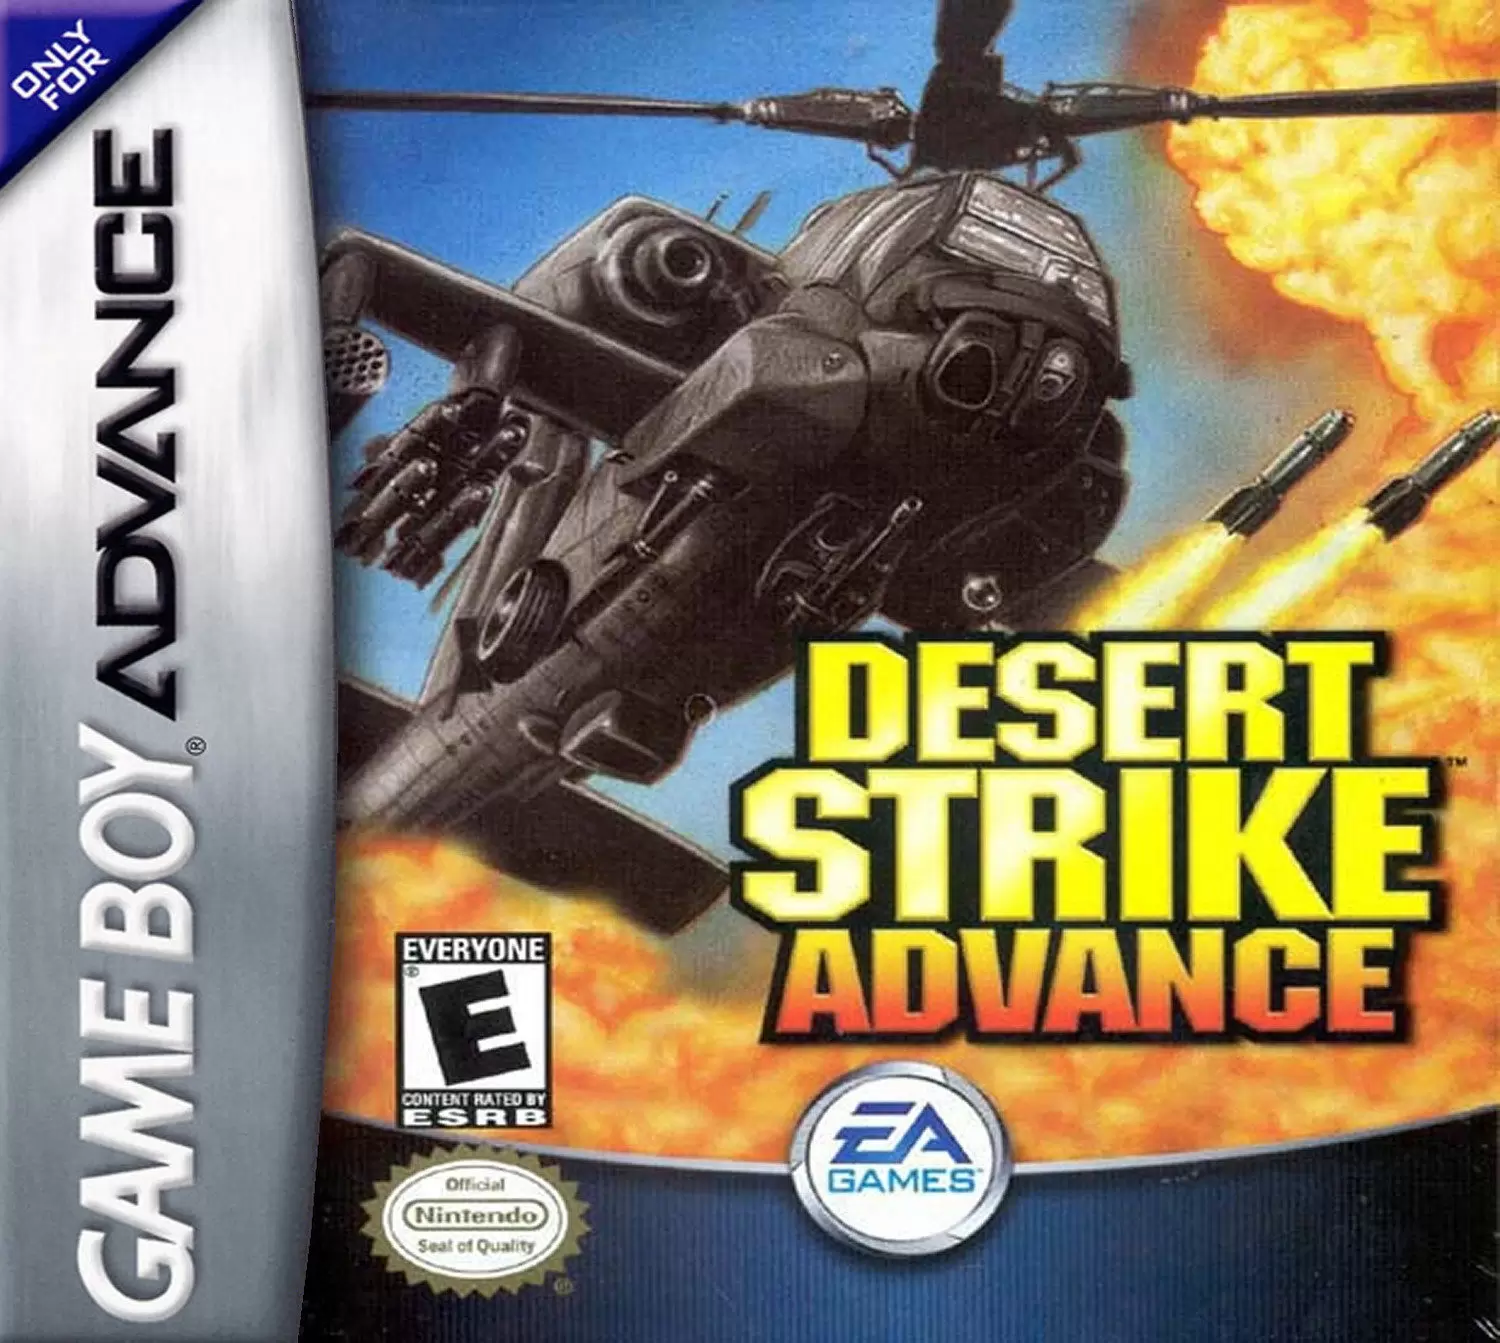 Game Boy Advance Games - Desert Strike Advance